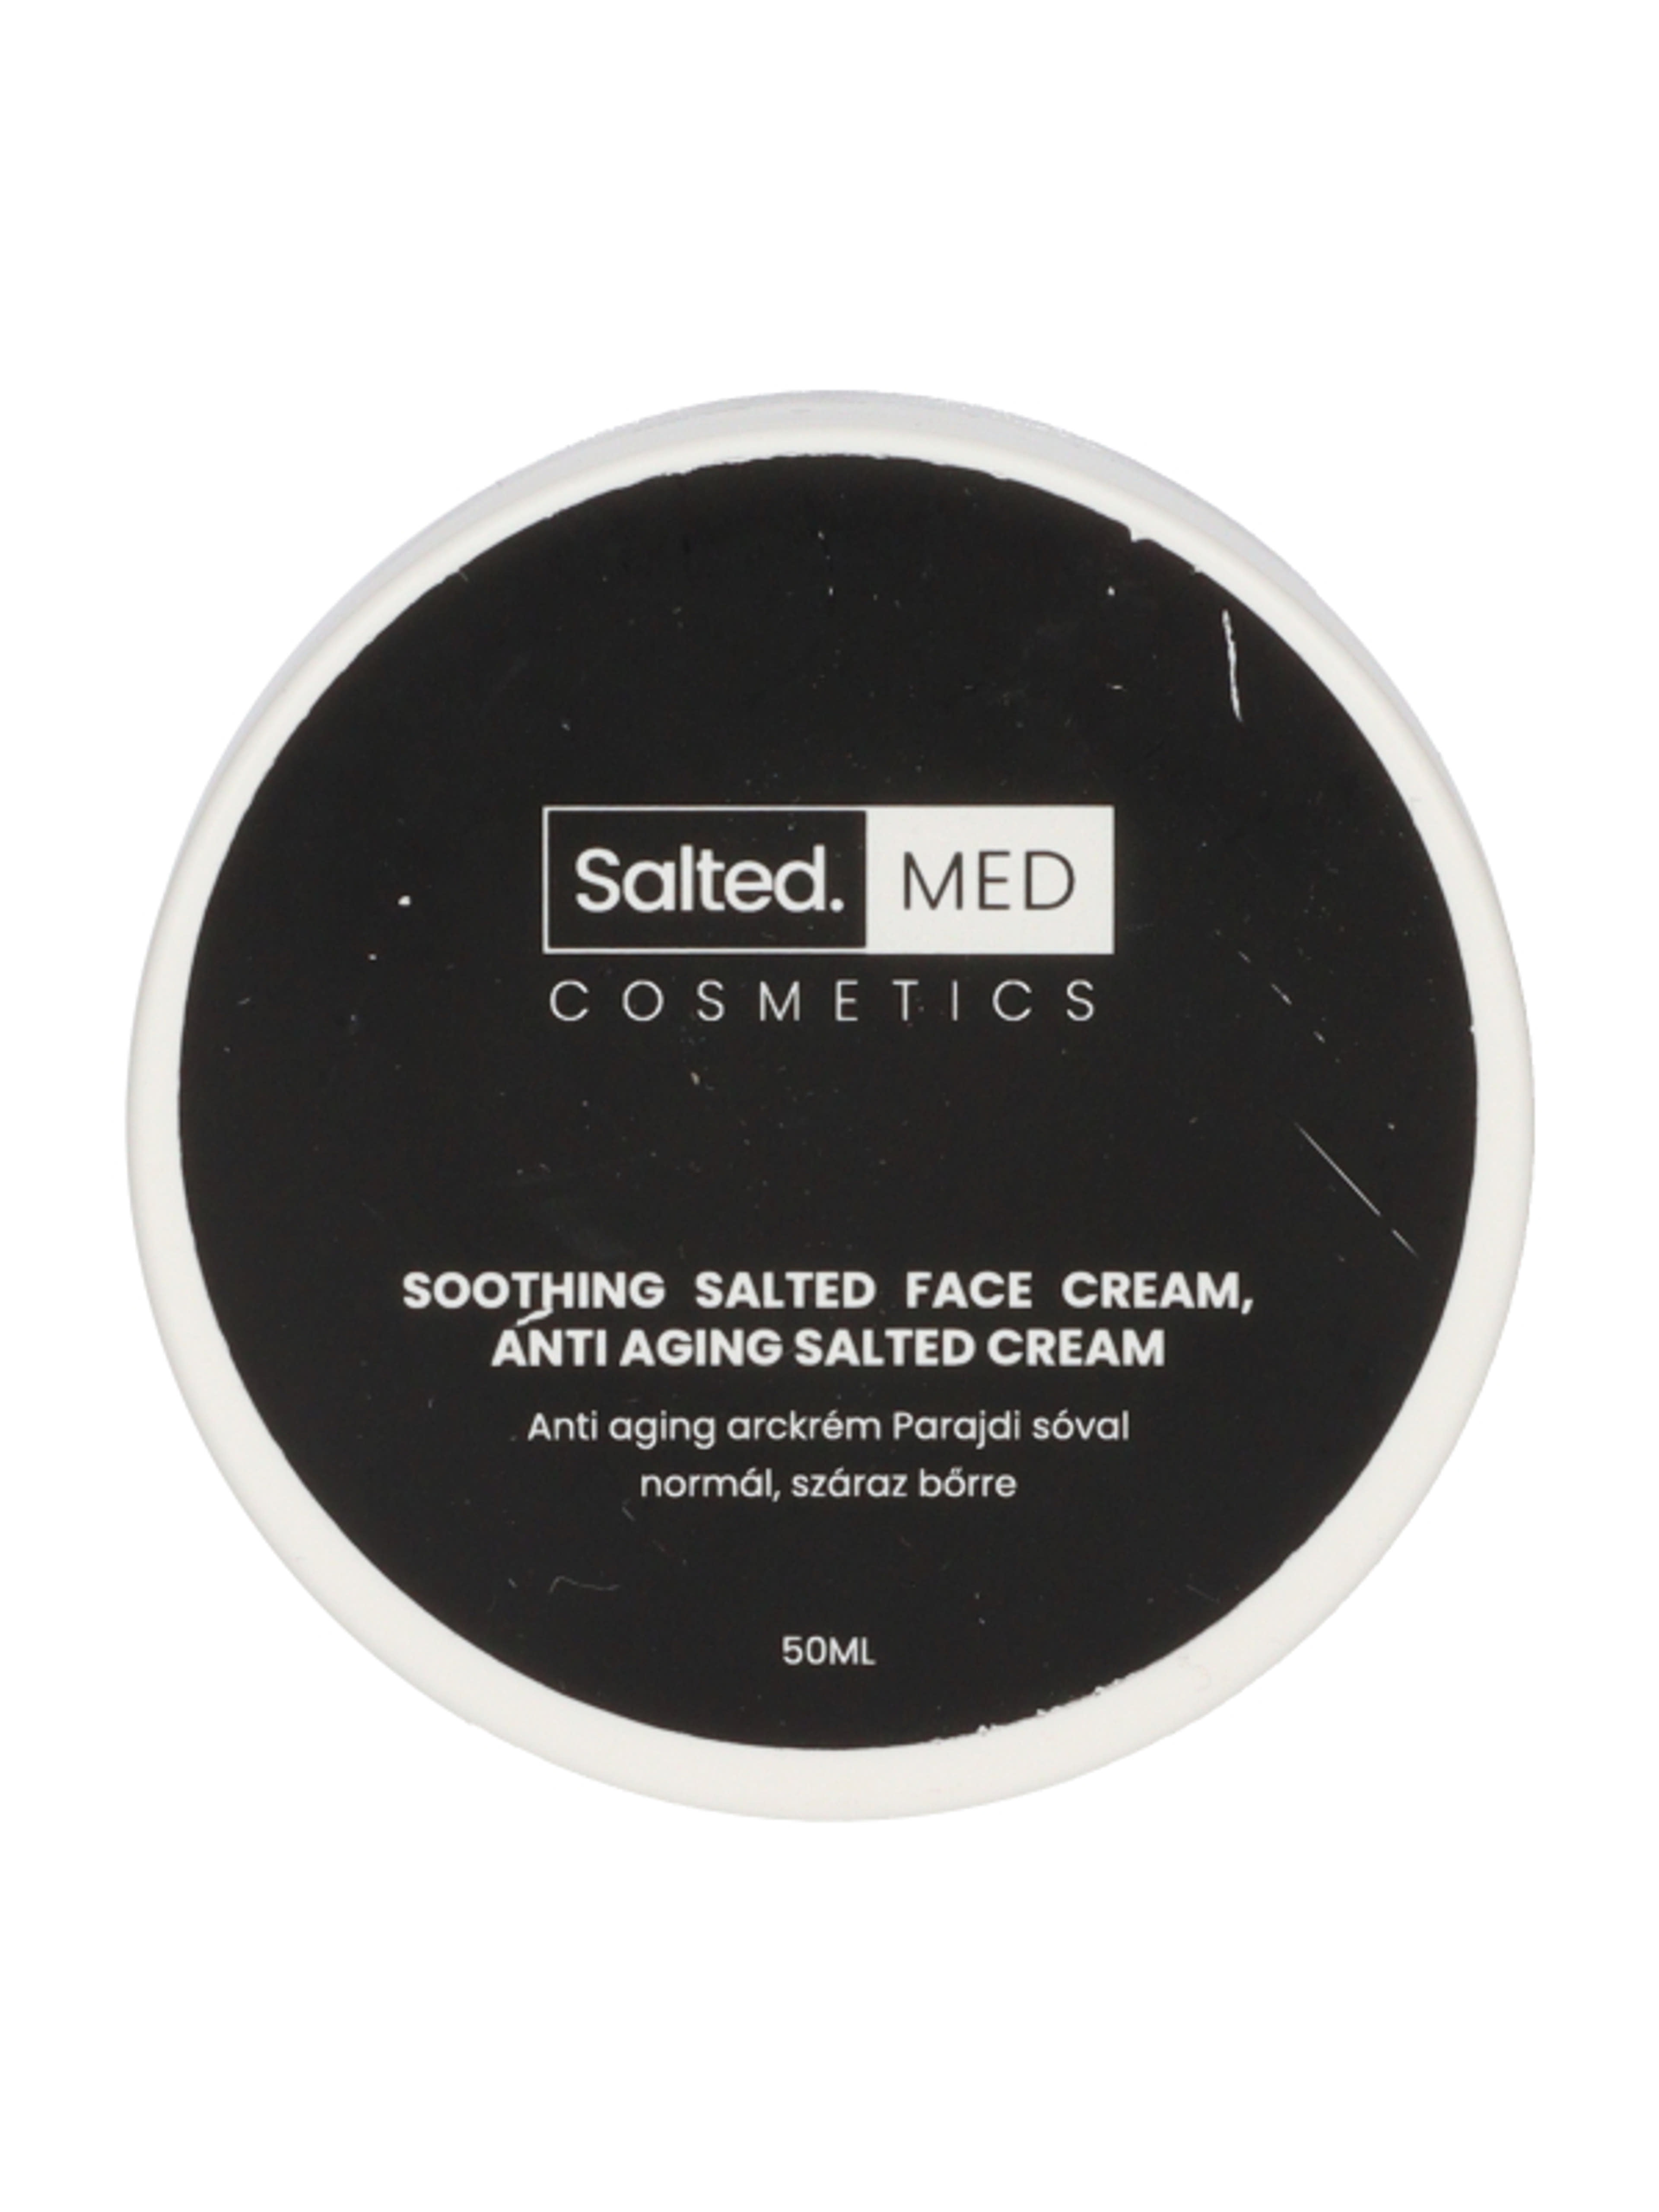 SaltedMED Anti-aging parajdi sós arckrém normál, száraz bőrre - 50 ml-1